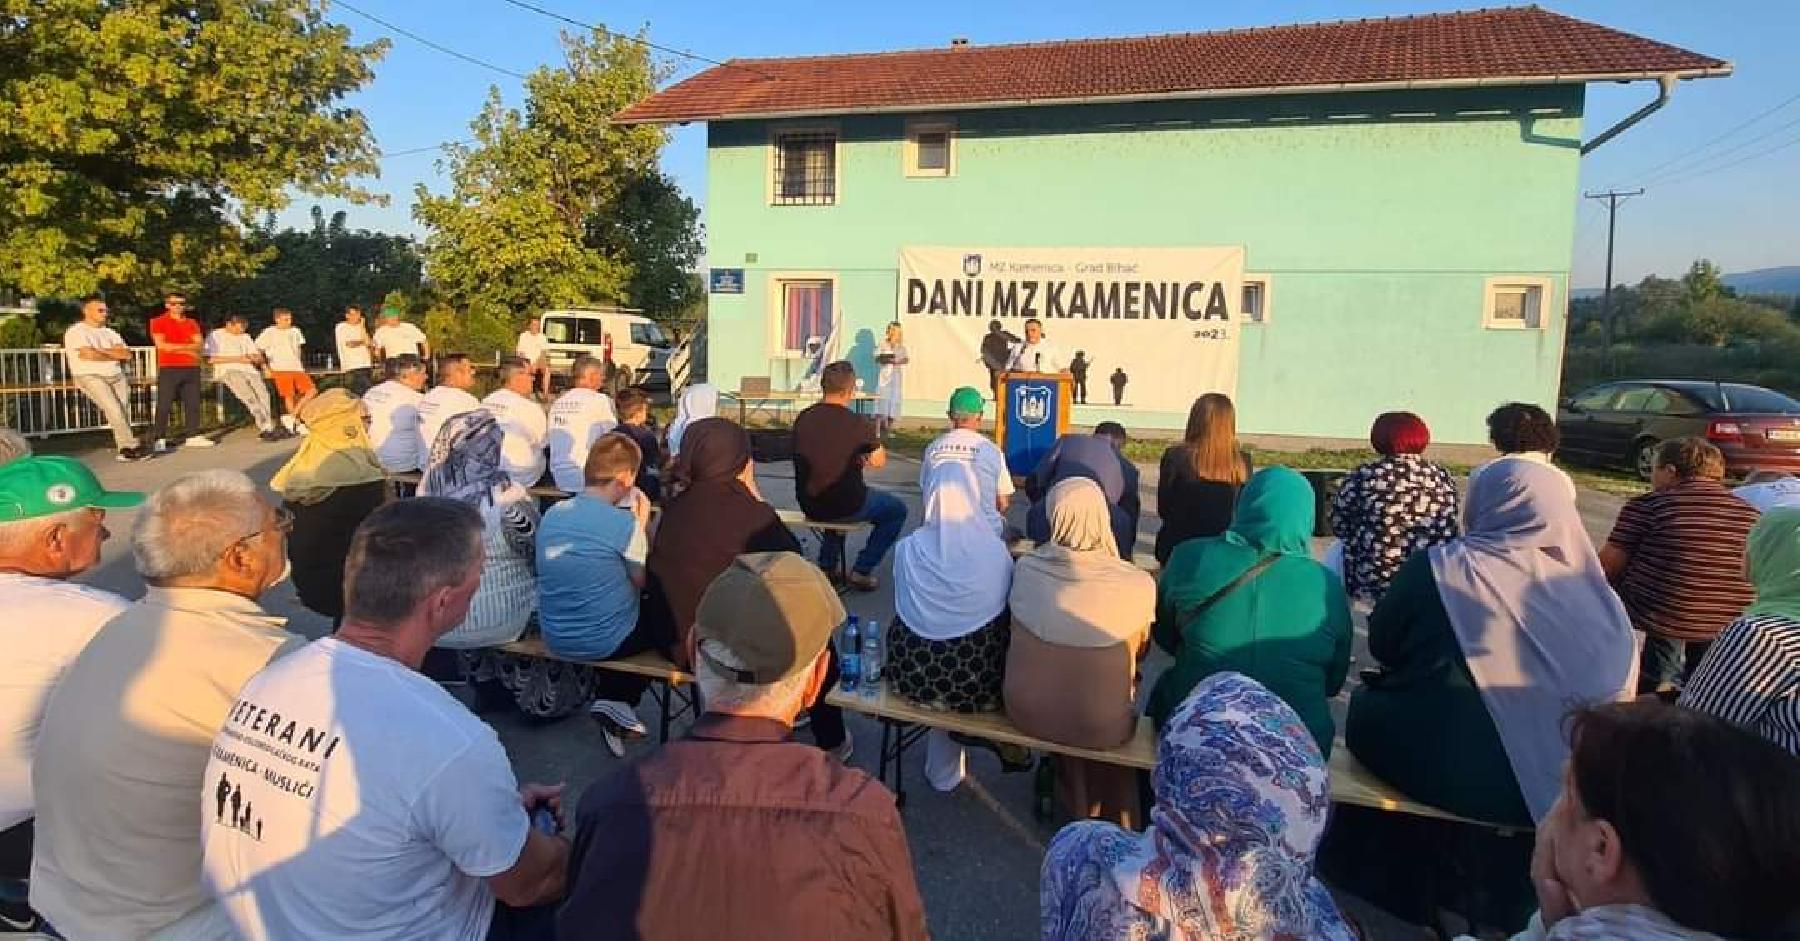 U prisustvu mještana bihaćkog naselja Kamenica  prigodnom manifestacijom obilježen je Dan MZ Kamenica.